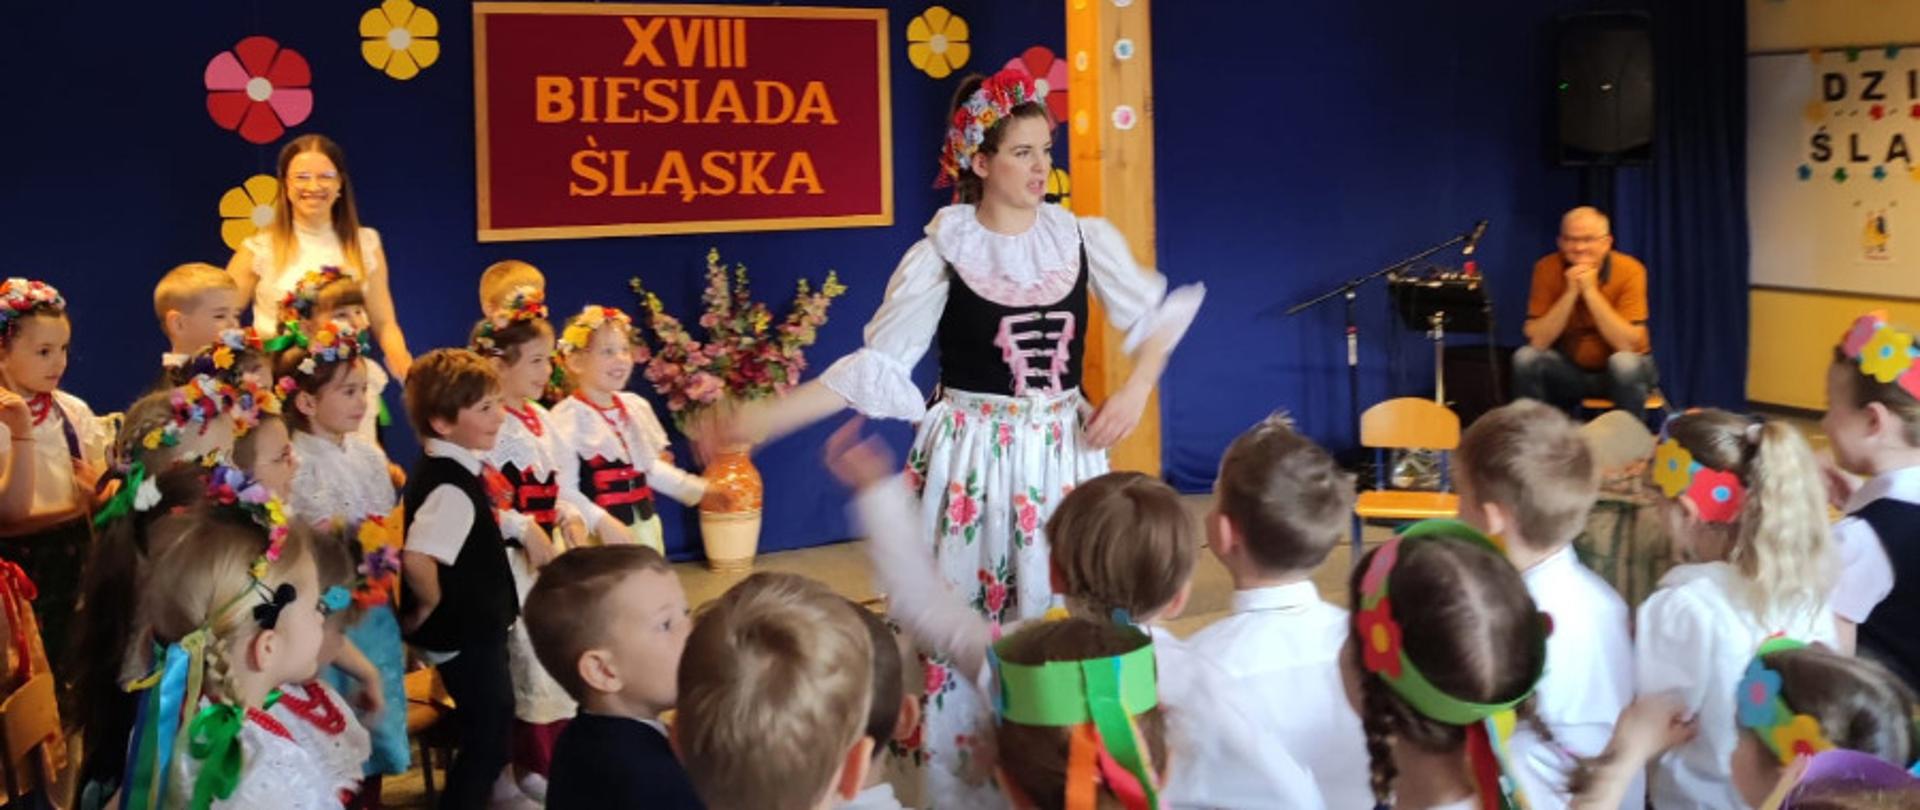 Kobieta w stroju śląskim wśród grupy przedszkolaków w tle napis XVIII biesiada śląska